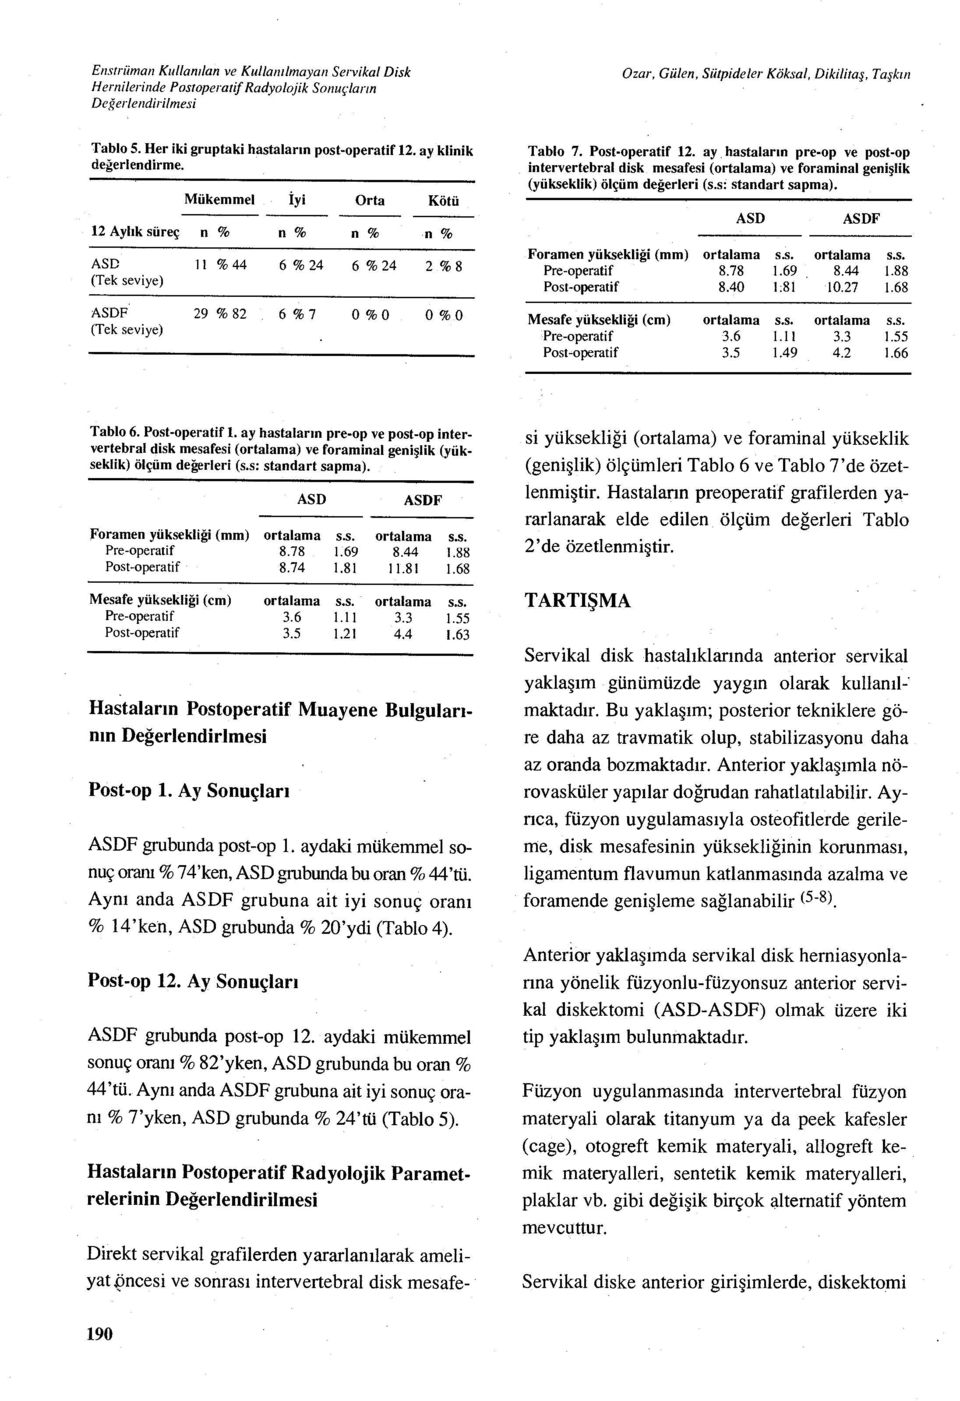 ay hastalar ın pre-op ve post-op intervertebral disk mesafesi (ortalama) ve foraminal geni şlik (yükseklik) ölçüm değerleri (s.s: standart sapma). ASD ASDF Foramen yüksekliği (mm) ortalama s.s. ortalama s.s. Pre-operatif 8.